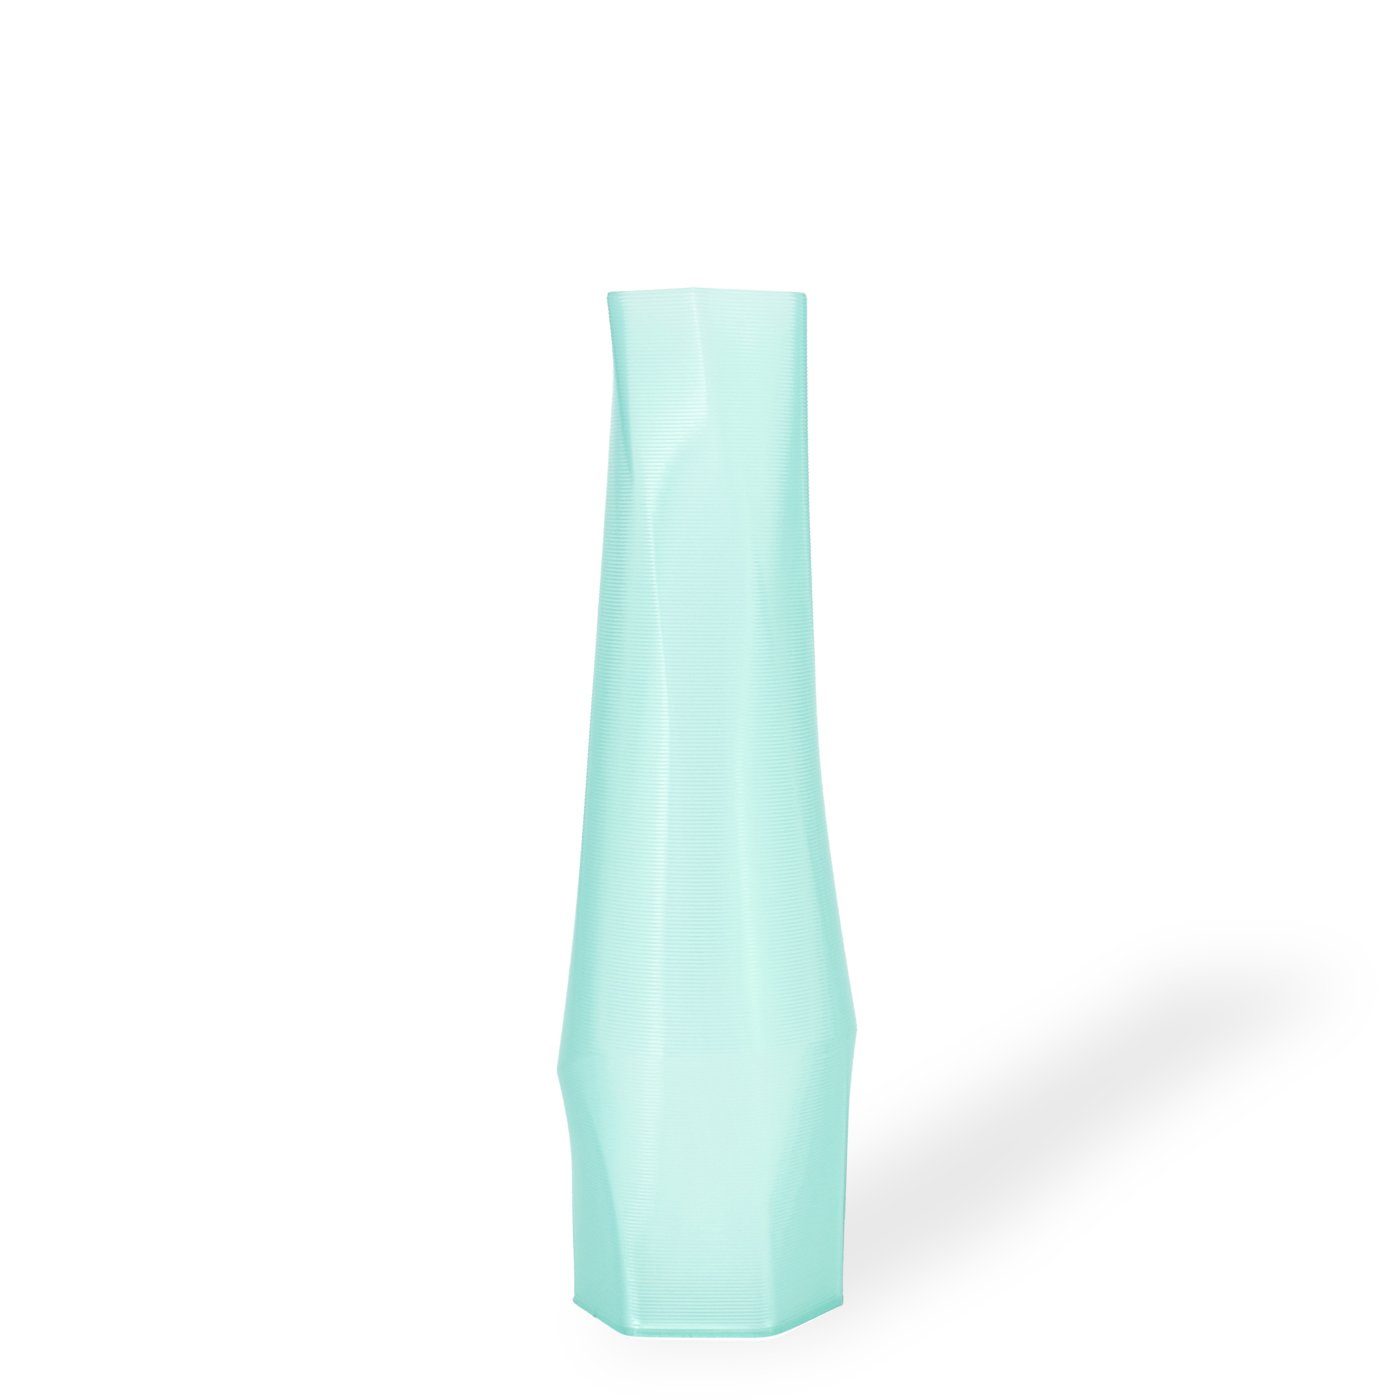 Shapes - Decorations Dekovase the vase - hexagon (deco), 3D Vasen, viele Farben, 100% 3D-Druck (Einzelmodell, 1 Vase), Dekorative Vase aus durchsichtigem Kunststoff Mintgrün